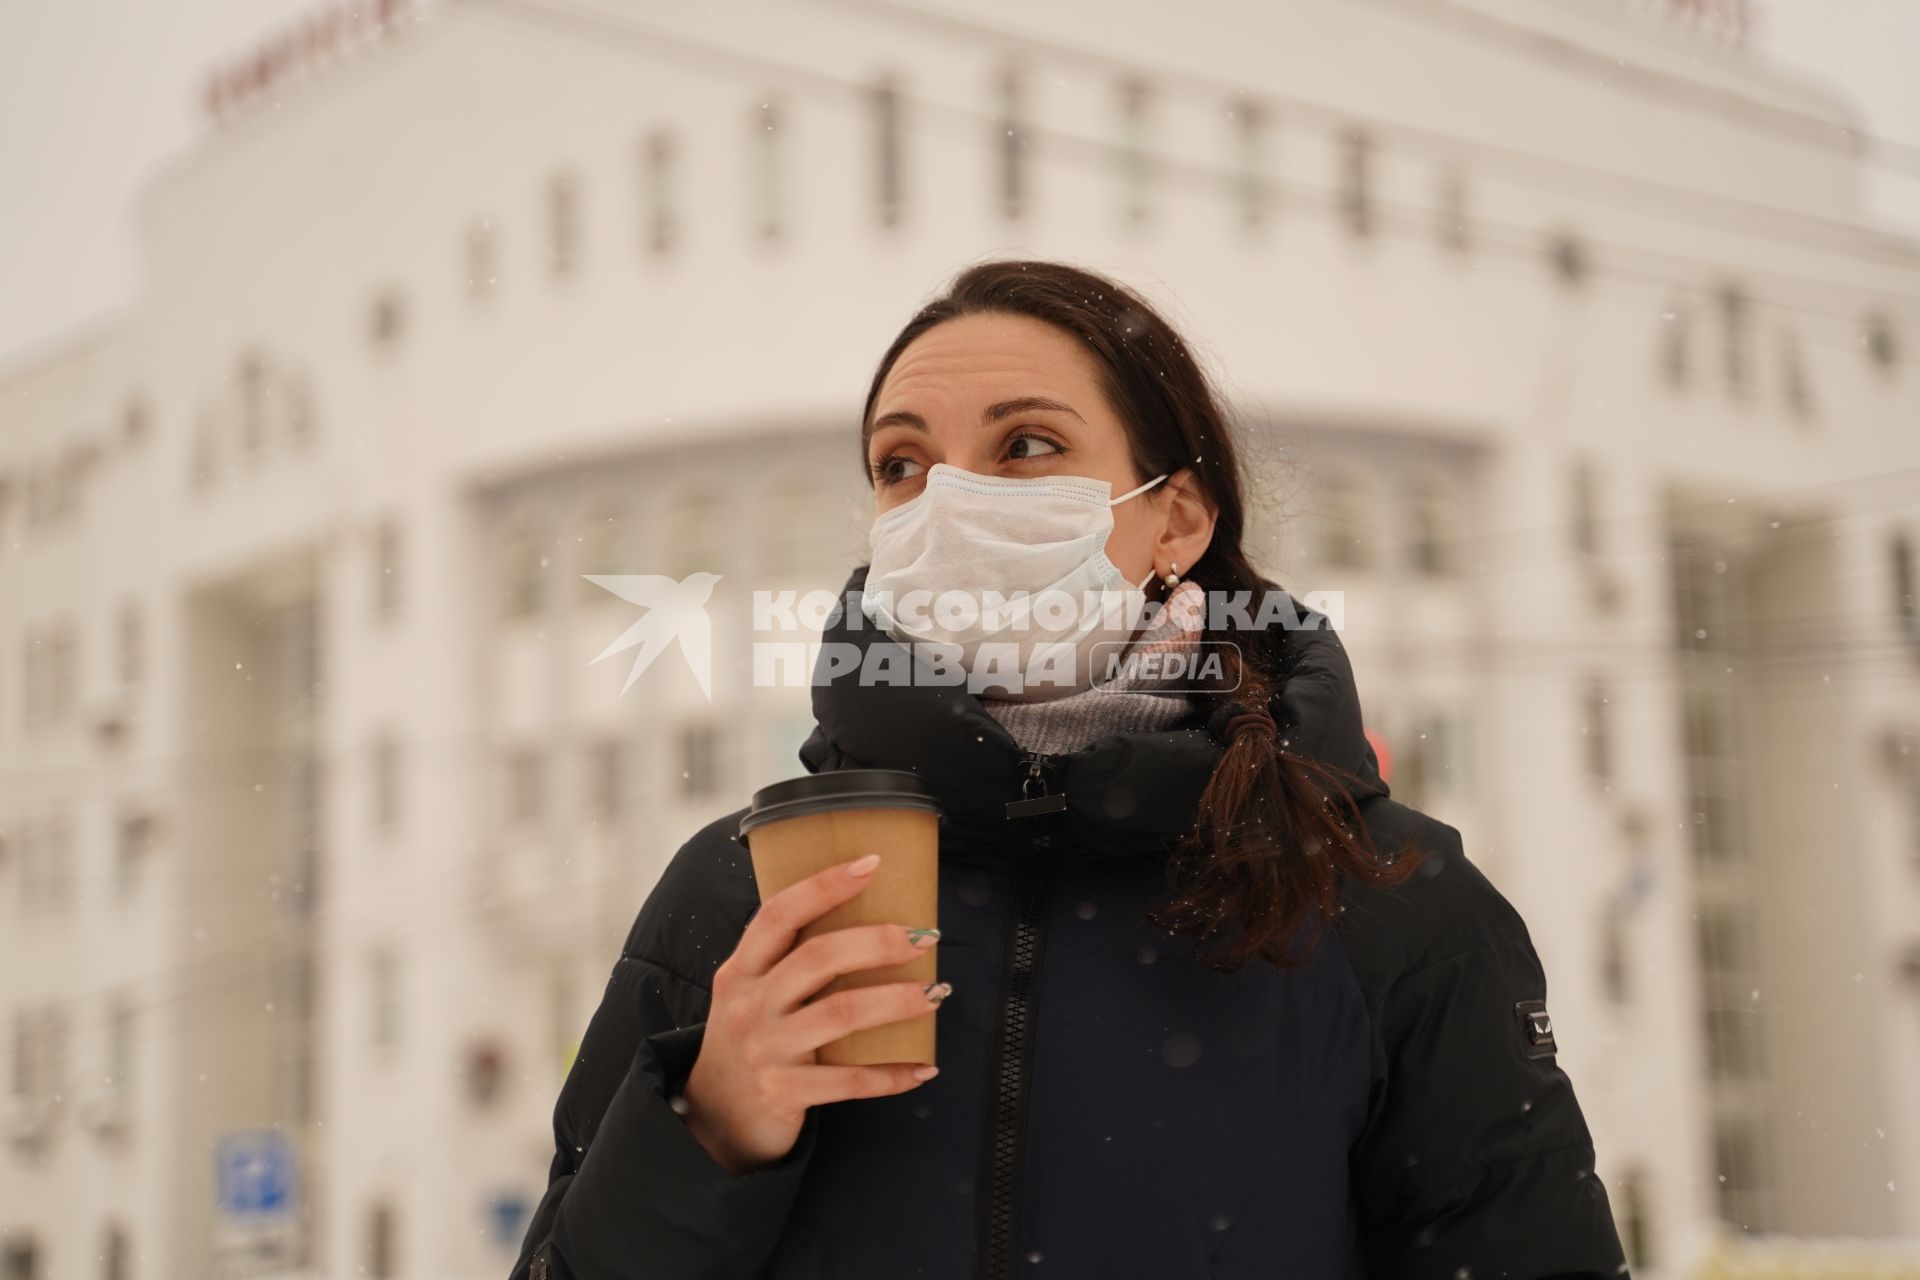 Самара. Девушка в медицинской маске  с пластиковым одноразовым стаканчиком на улице.